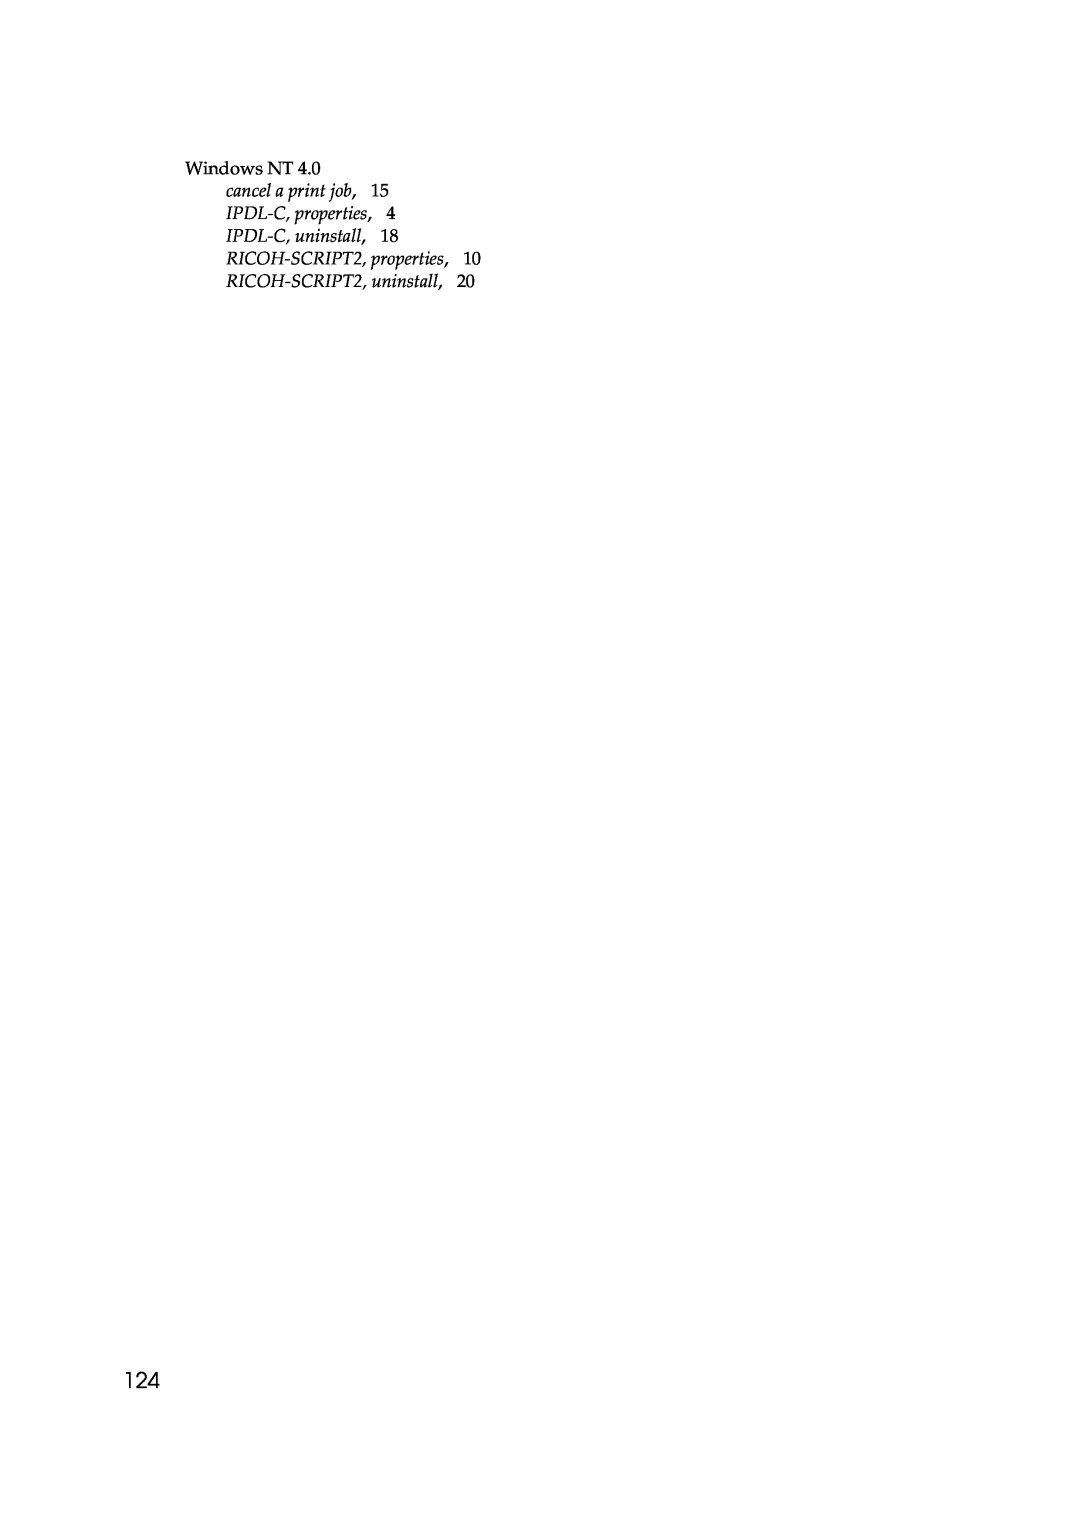 Lanier AP206 manual RICOH-SCRIPT2, properties, 10 RICOH-SCRIPT2, uninstall 